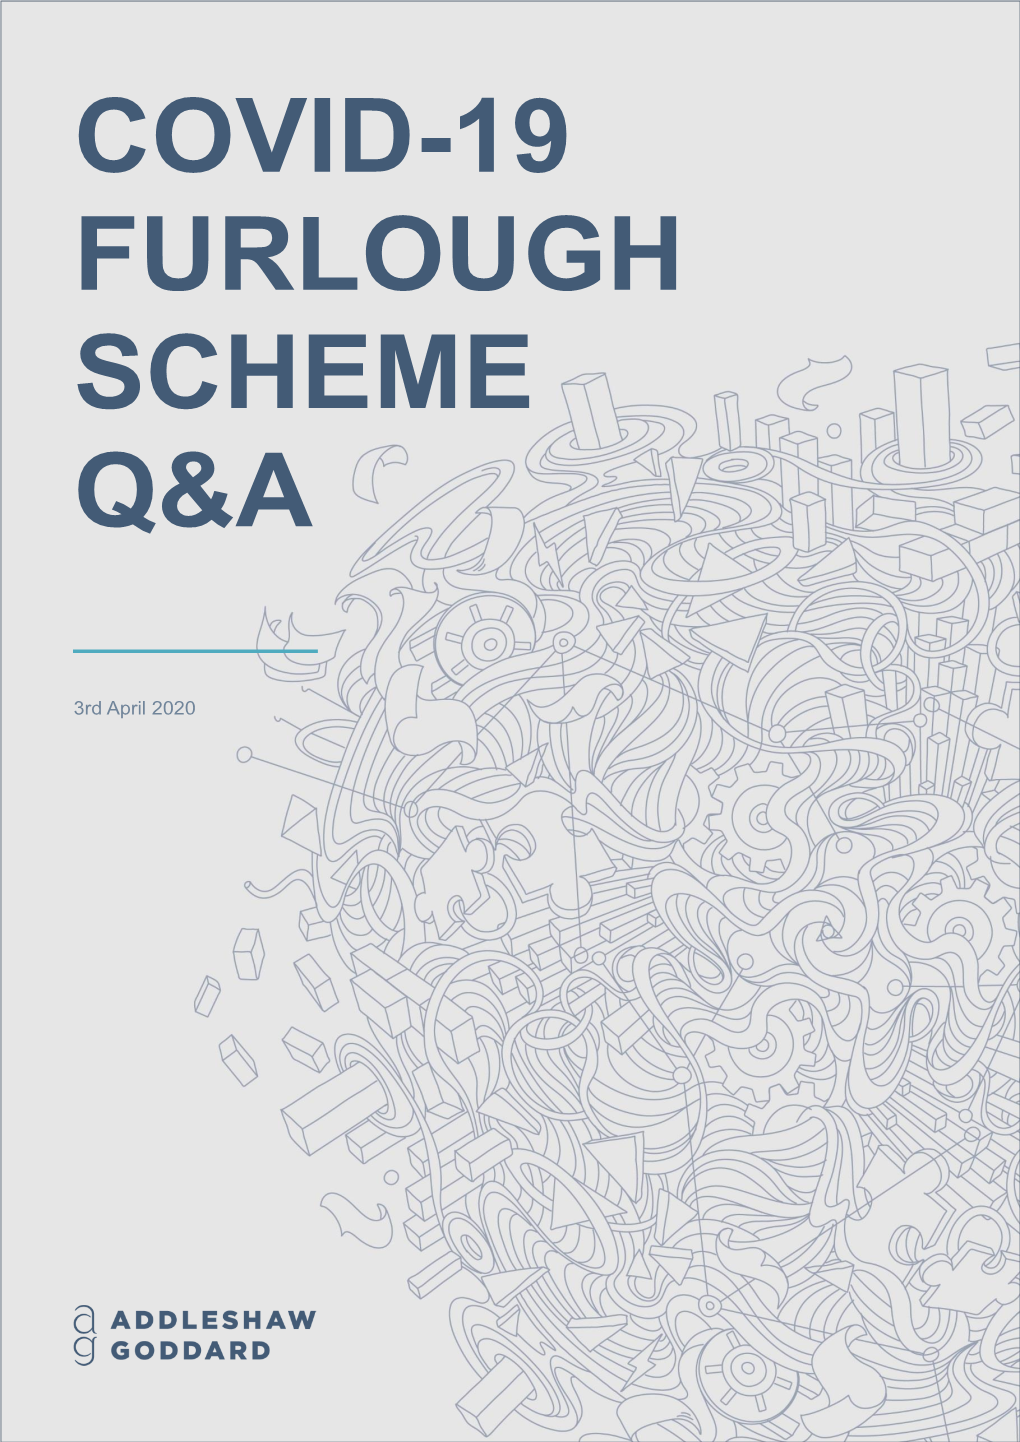 Covid-19 Furlough Scheme Q&A